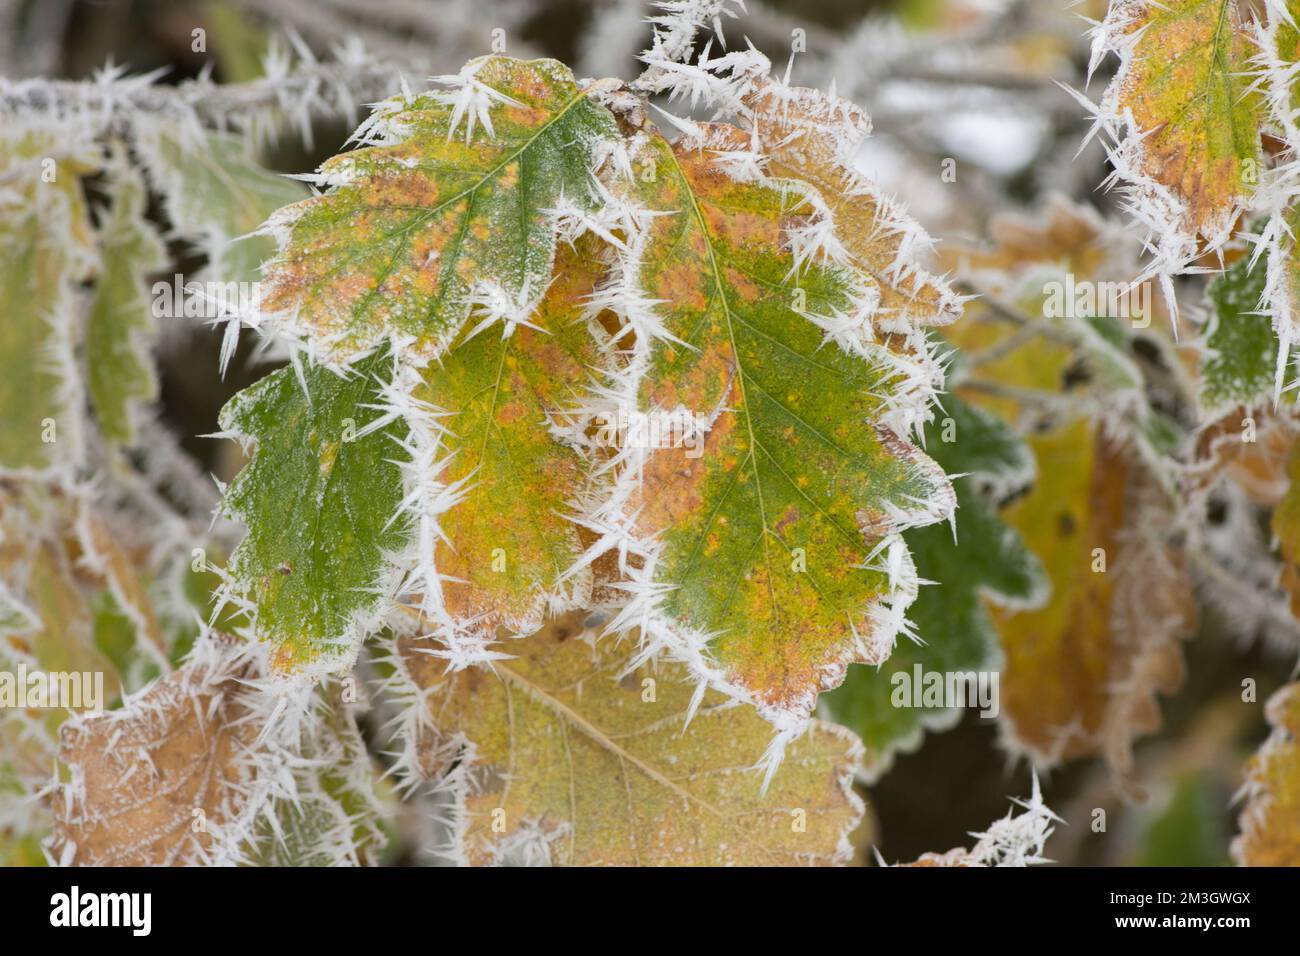 Chêne Pedunculate, chêne anglais, Quercus robur, givre sur les feuilles d'automne colorées, bords dépolis, jaune vert doré, Sussex, Royaume-Uni, Décembre Banque D'Images